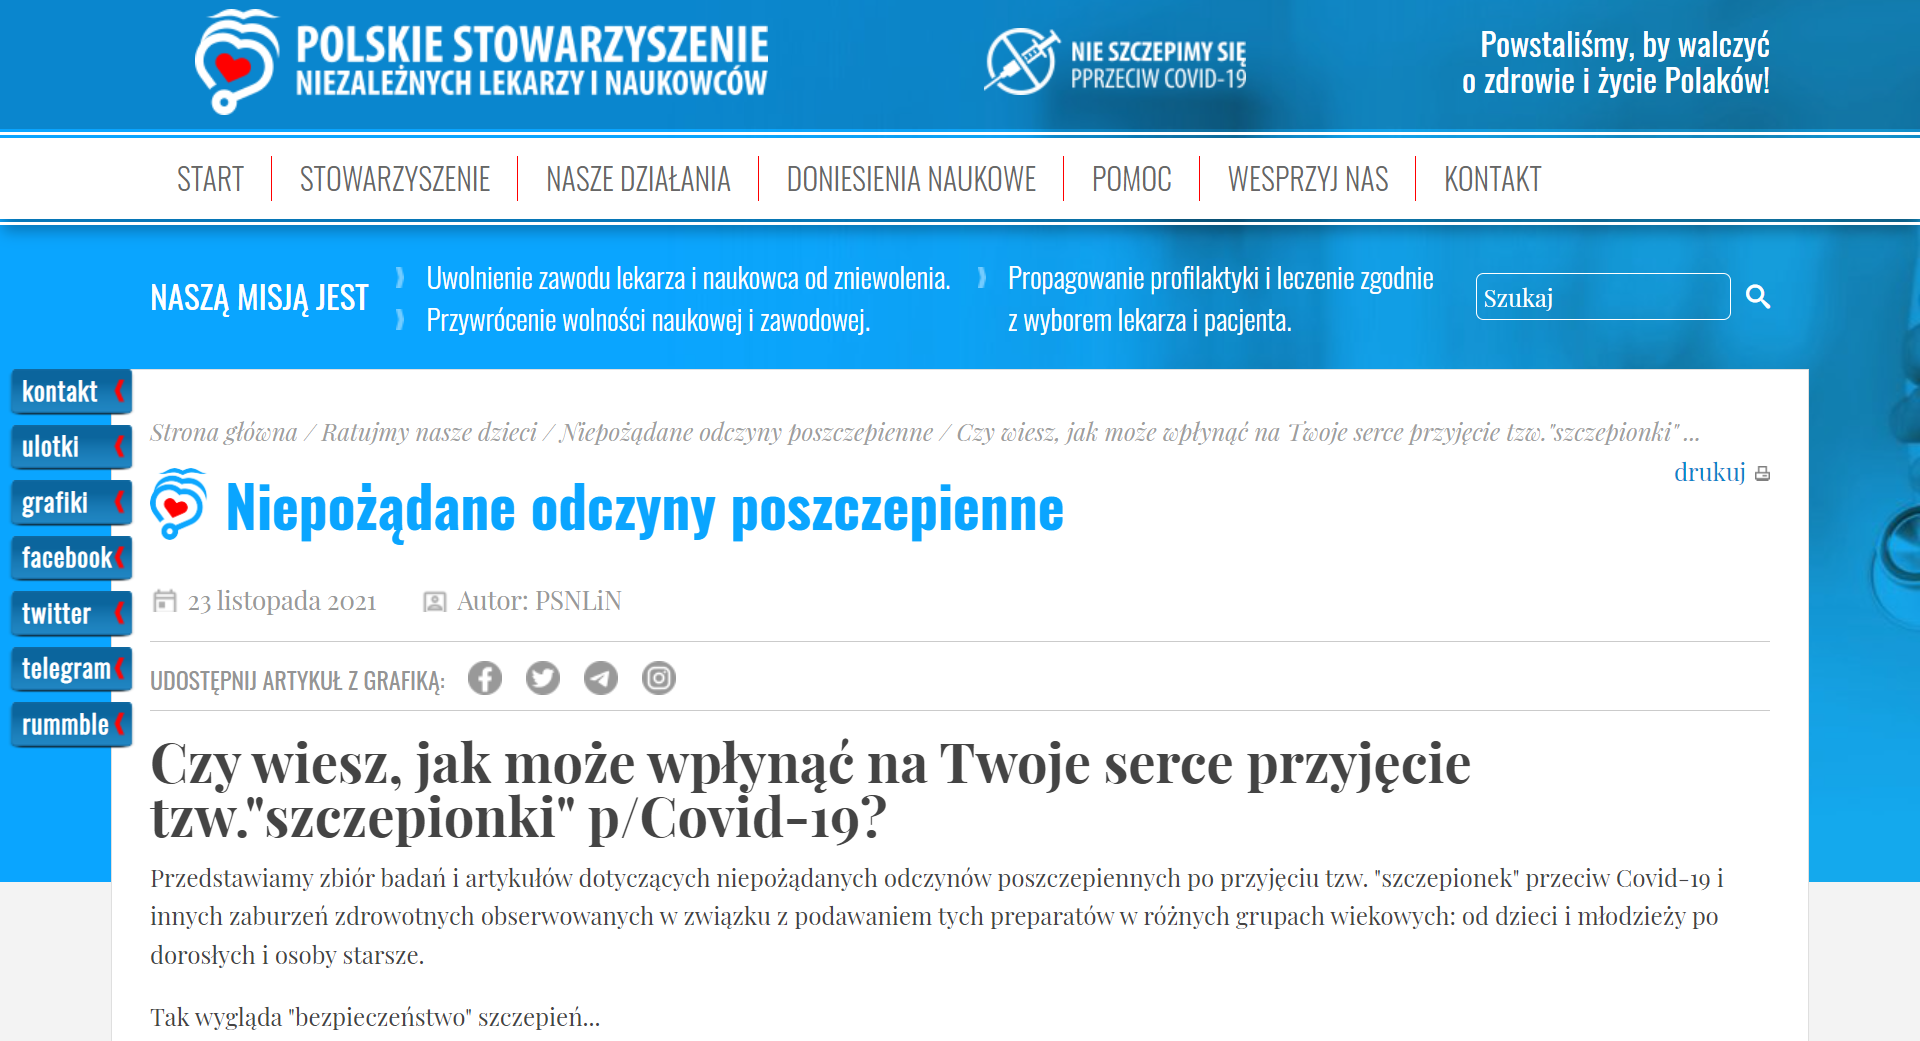 Nagłówek artykułu na stronie Polskiego Stowarzyszenia Niezależnych Lekarzy i Naukowców